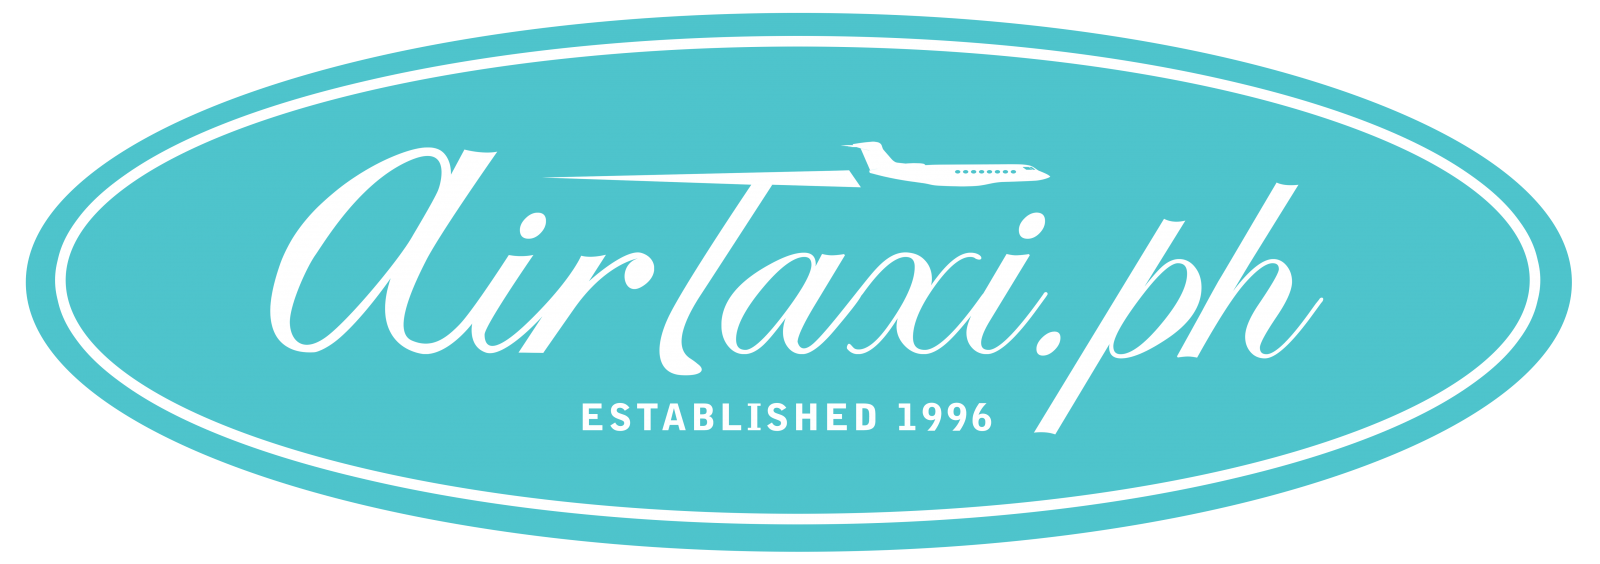 Air Texi Logo PNG-PlusPNG.com